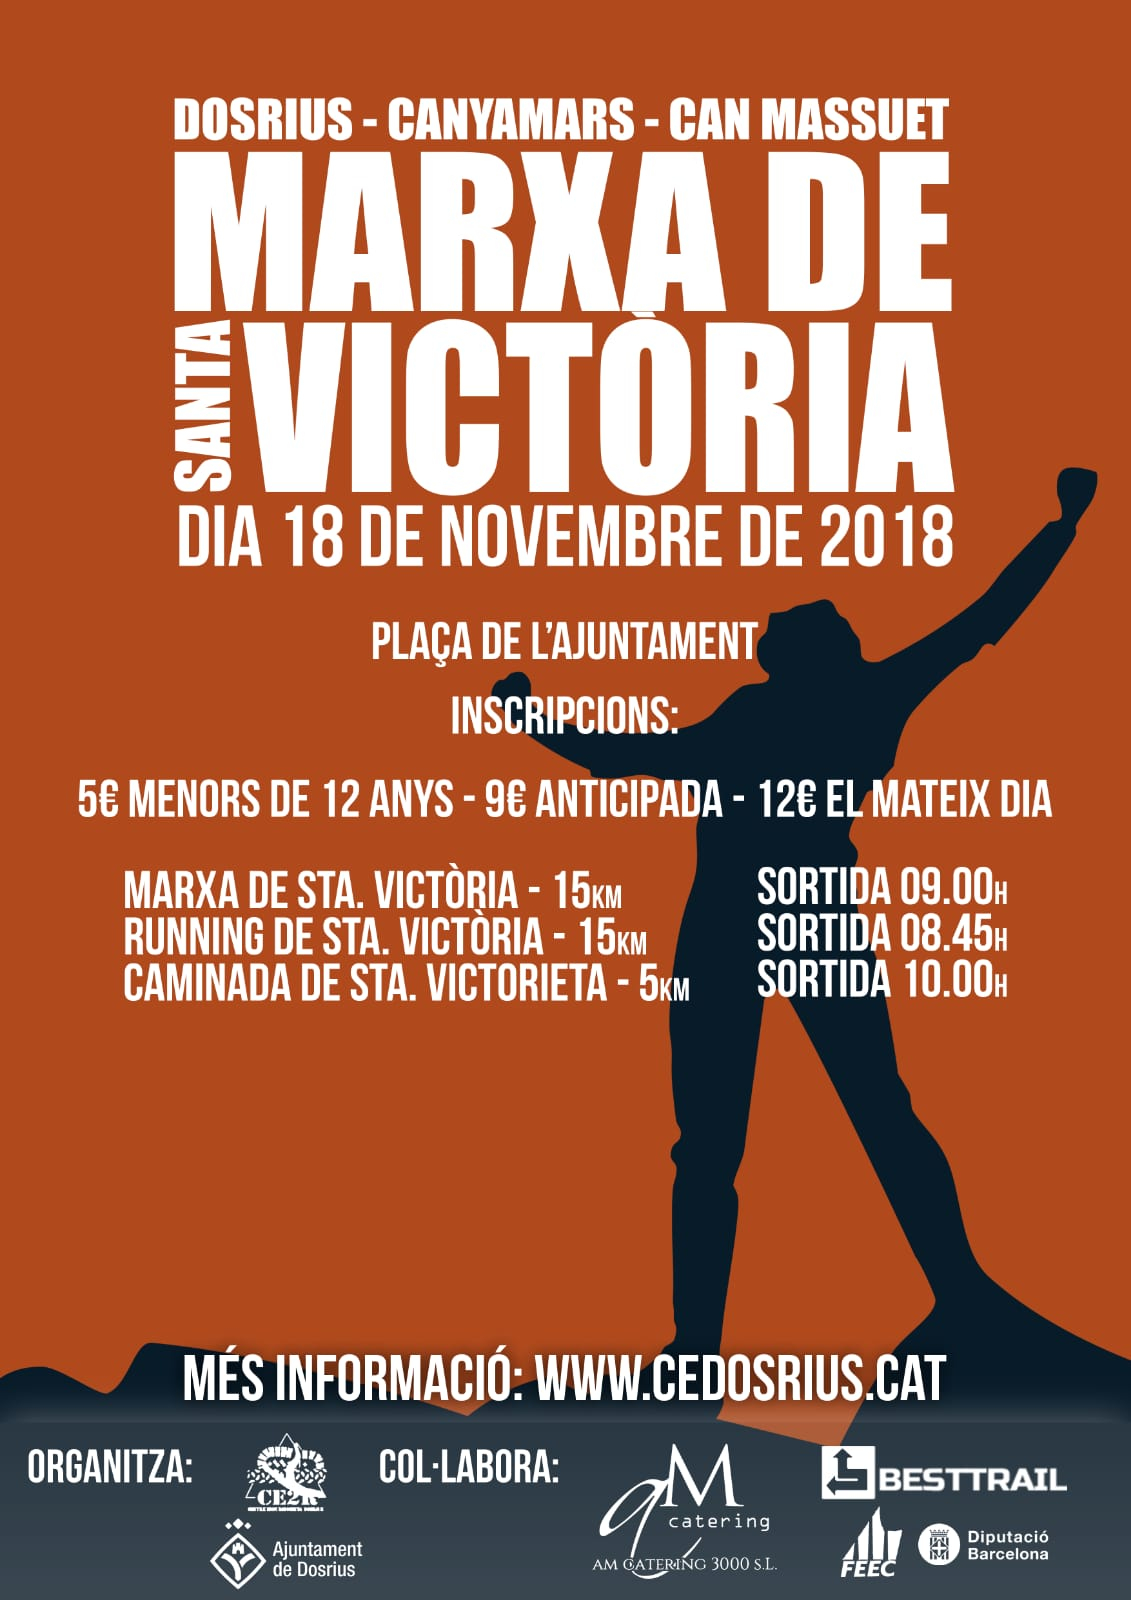 MARXA DE SANTA VICTÒRIA 2018 (NOVA DATA) - Inscriu-te